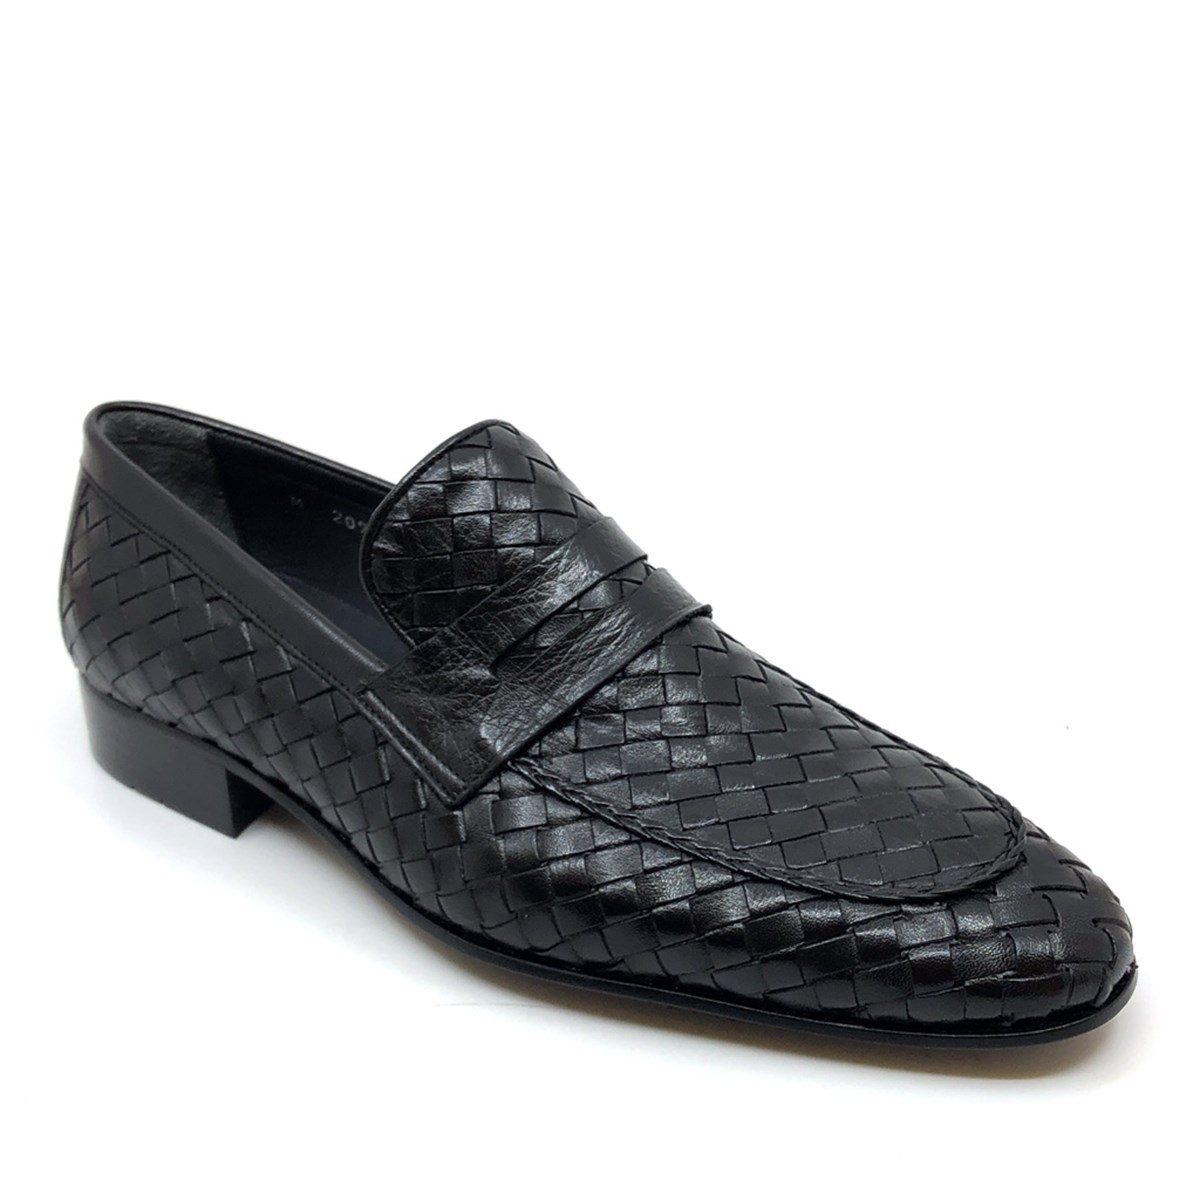 Fosco Özel Örgülü Klasik Erkek Ayakkabı, Renk: Siyah, Beden: 39